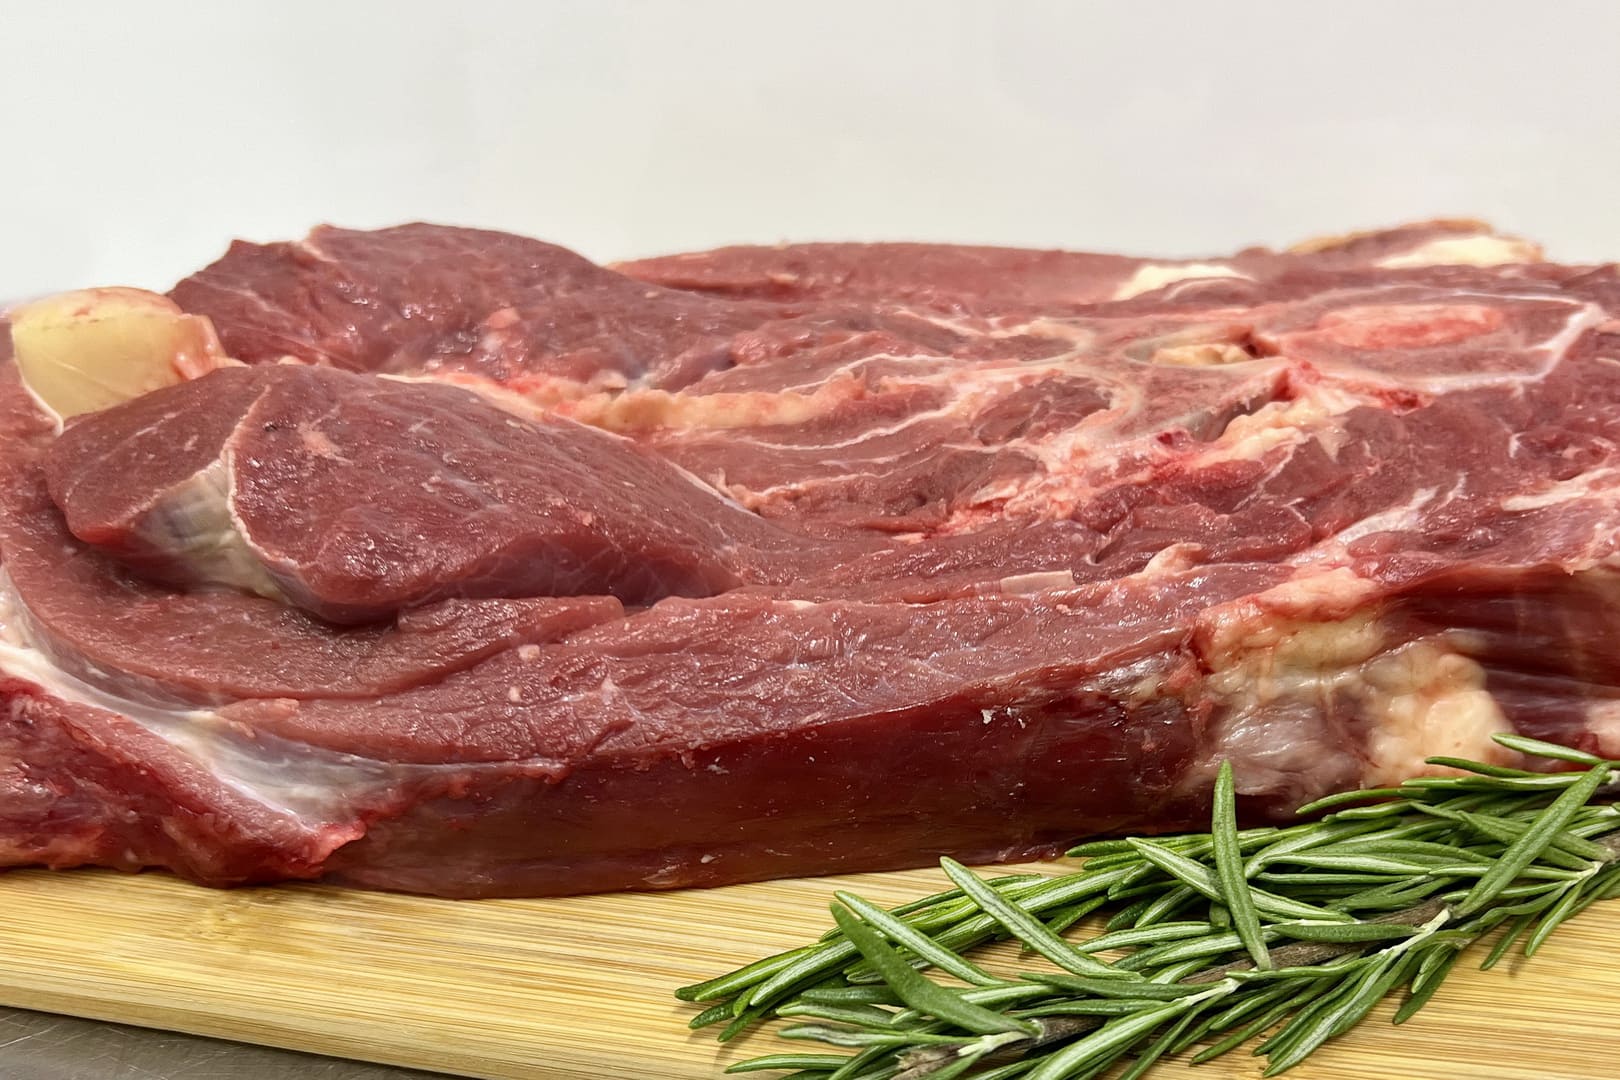 Мясной продукт из шейки говядины с костями, прослойками жира и сухожилиями, обладает богатым мясным вкусом и сочностью.  - Фото 5